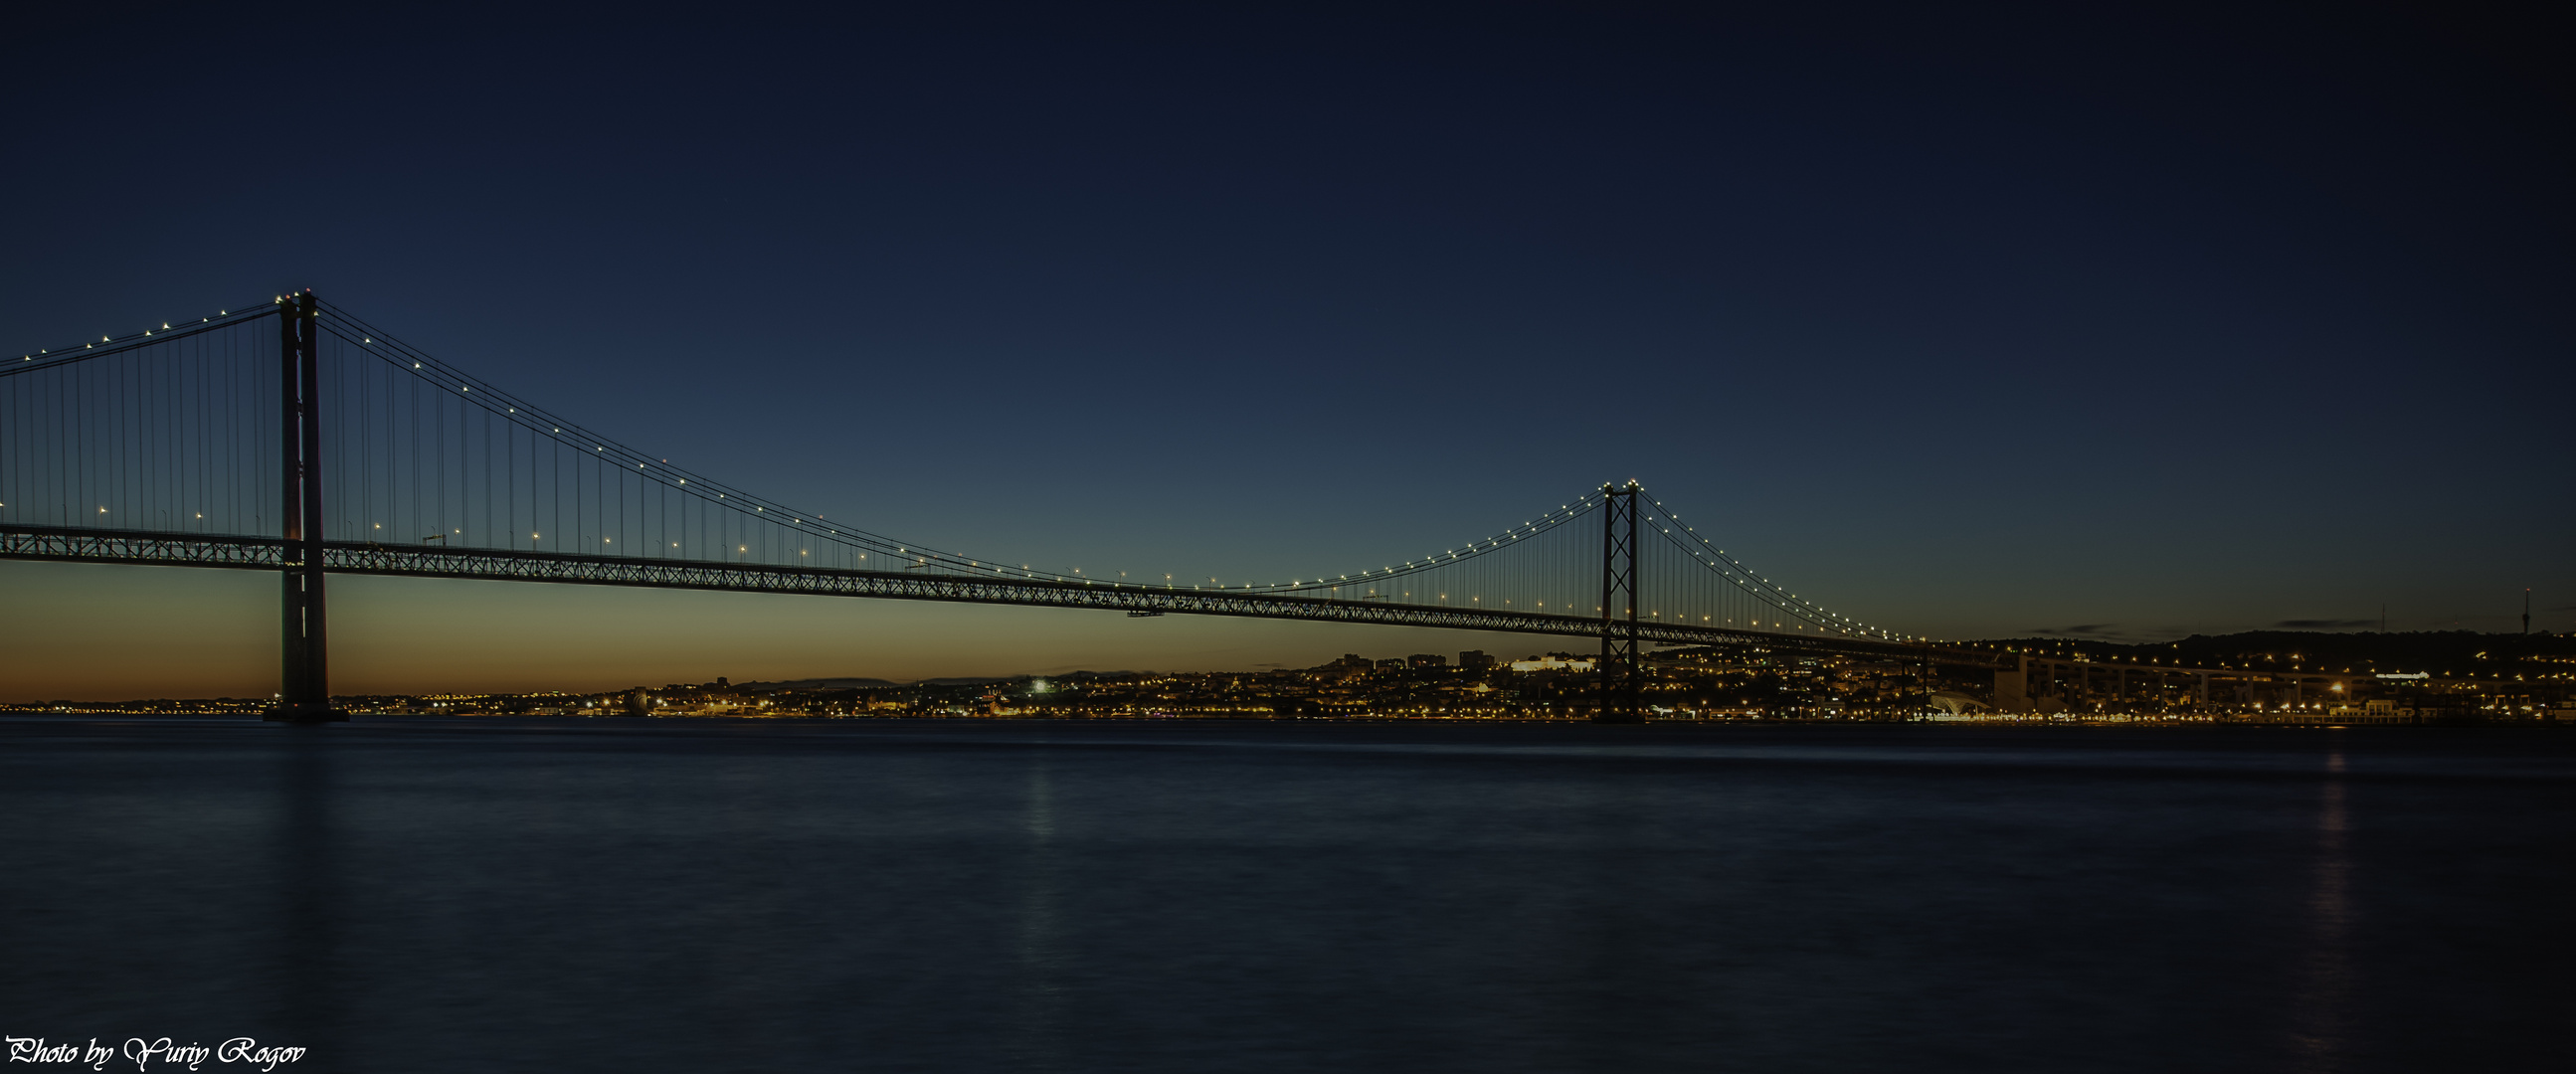 The 25 de Abril Bridge. Lisbon